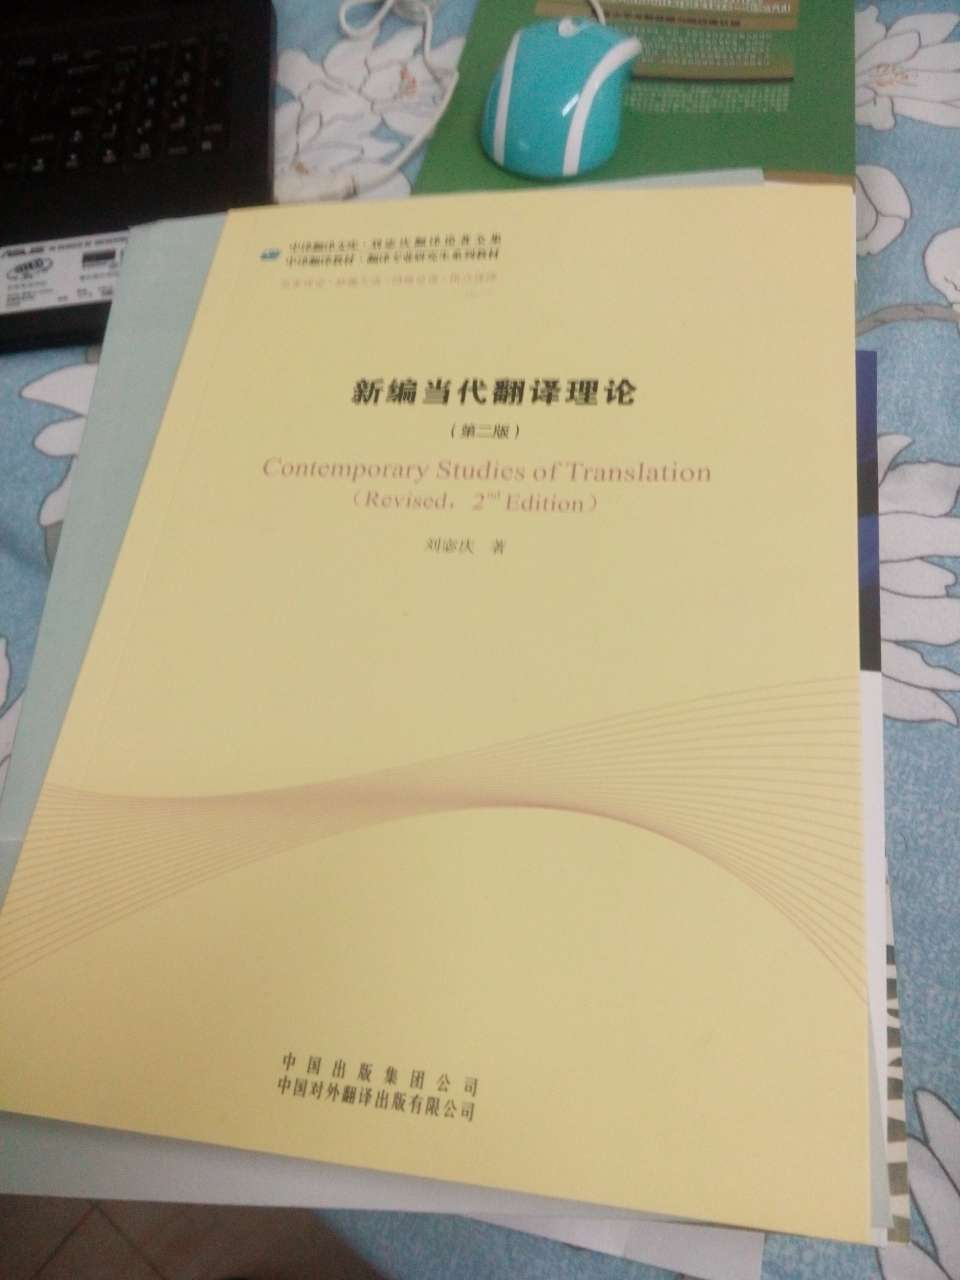 嗯，这本翻译的书还不错吧，现在正打算学习翻译，整一个比较统一的翻译方面的理论